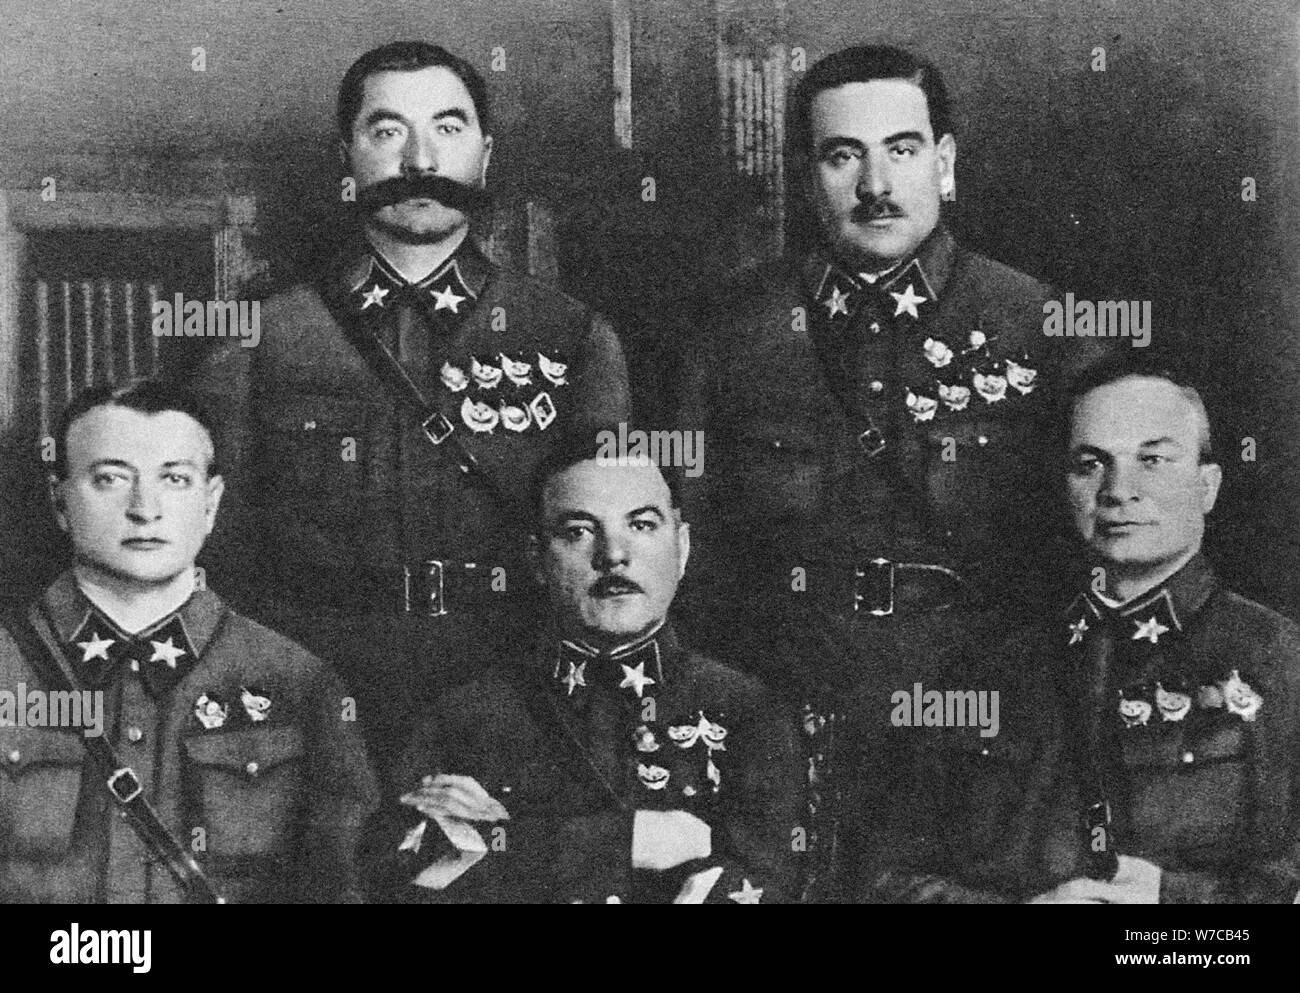 Die ersten 5 Marshals der UDSSR: Tuchatschewski, Budyonny, Woroschilow, Blyukher, Jegorow, 1935. Stockfoto